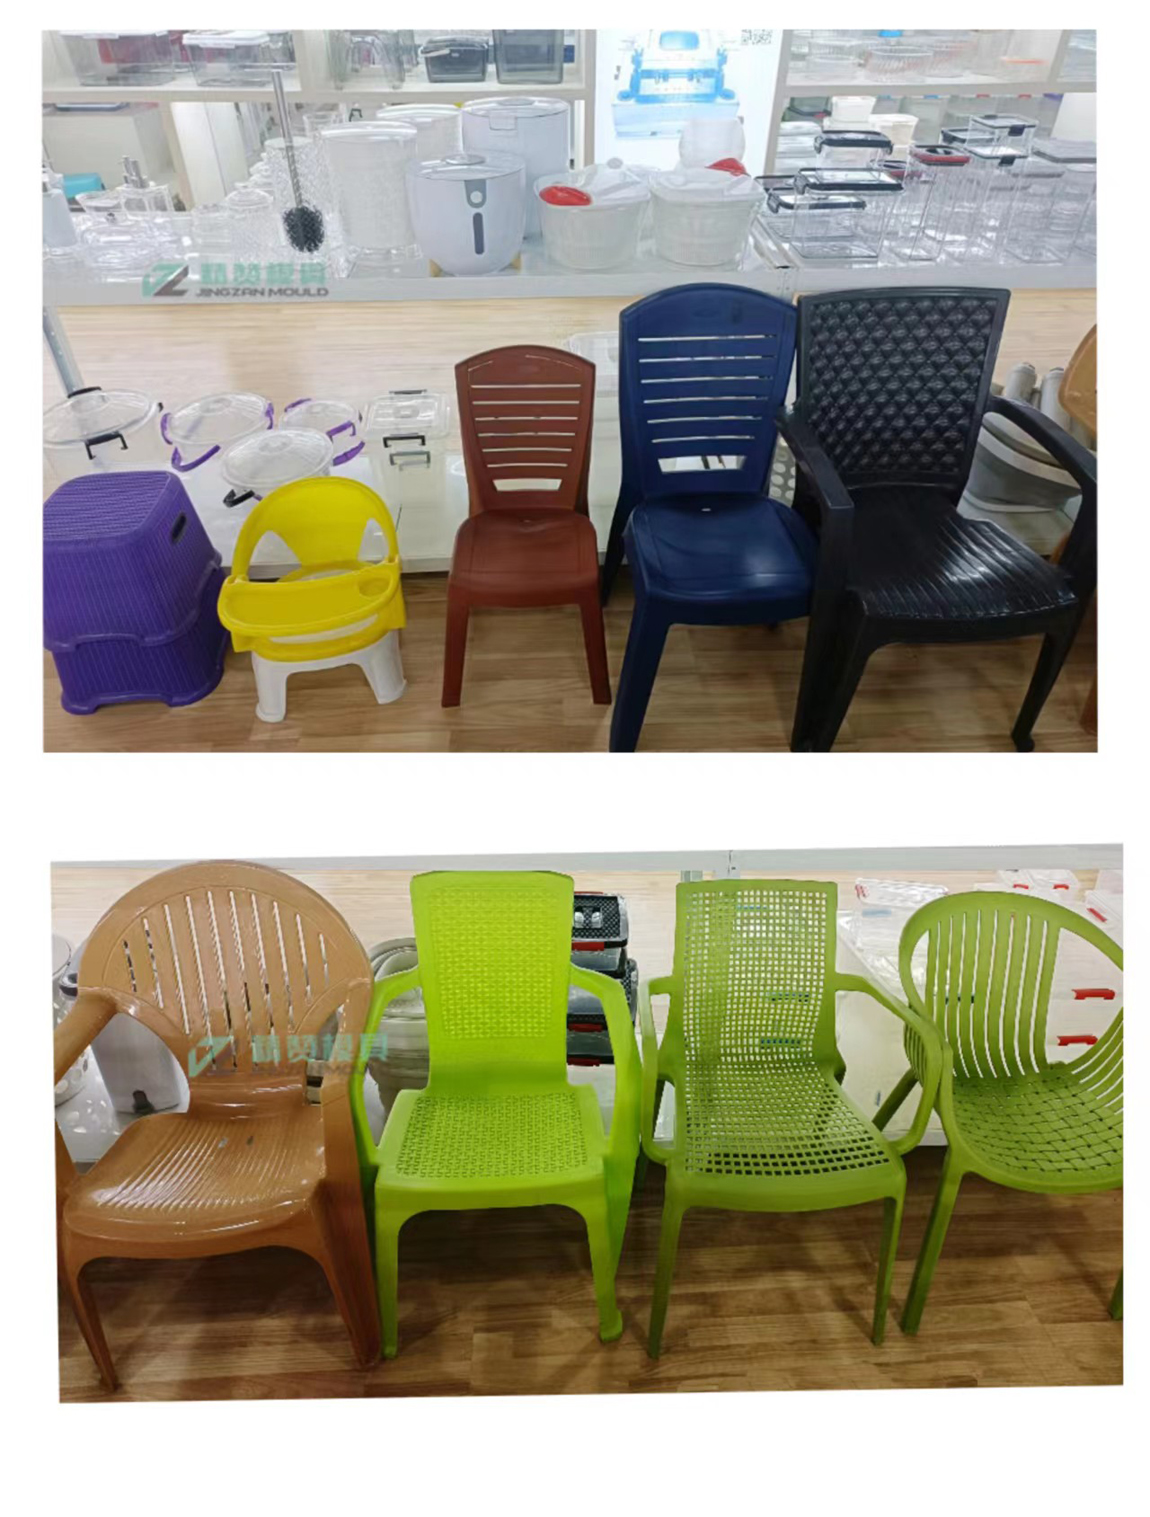 释放凳椅模具系列潜力：探索产品特性与应用